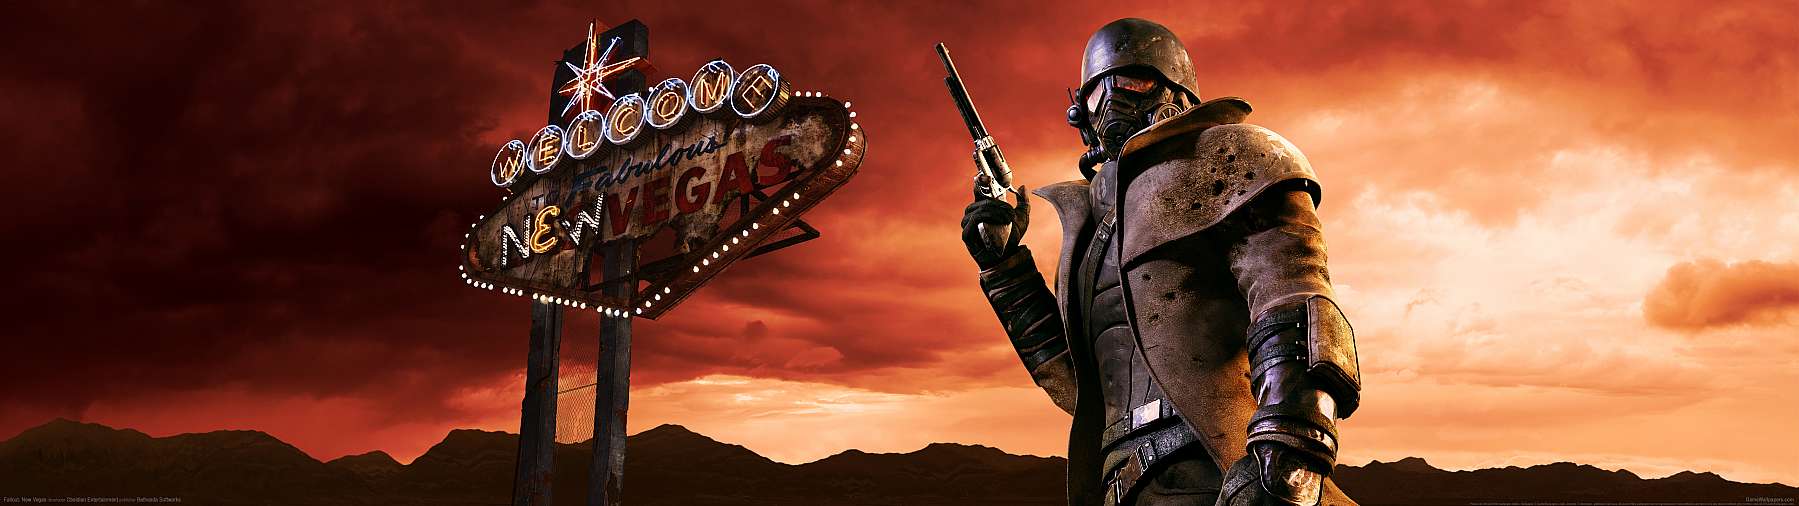 Fallout: New Vegas superwide fond d'cran 01